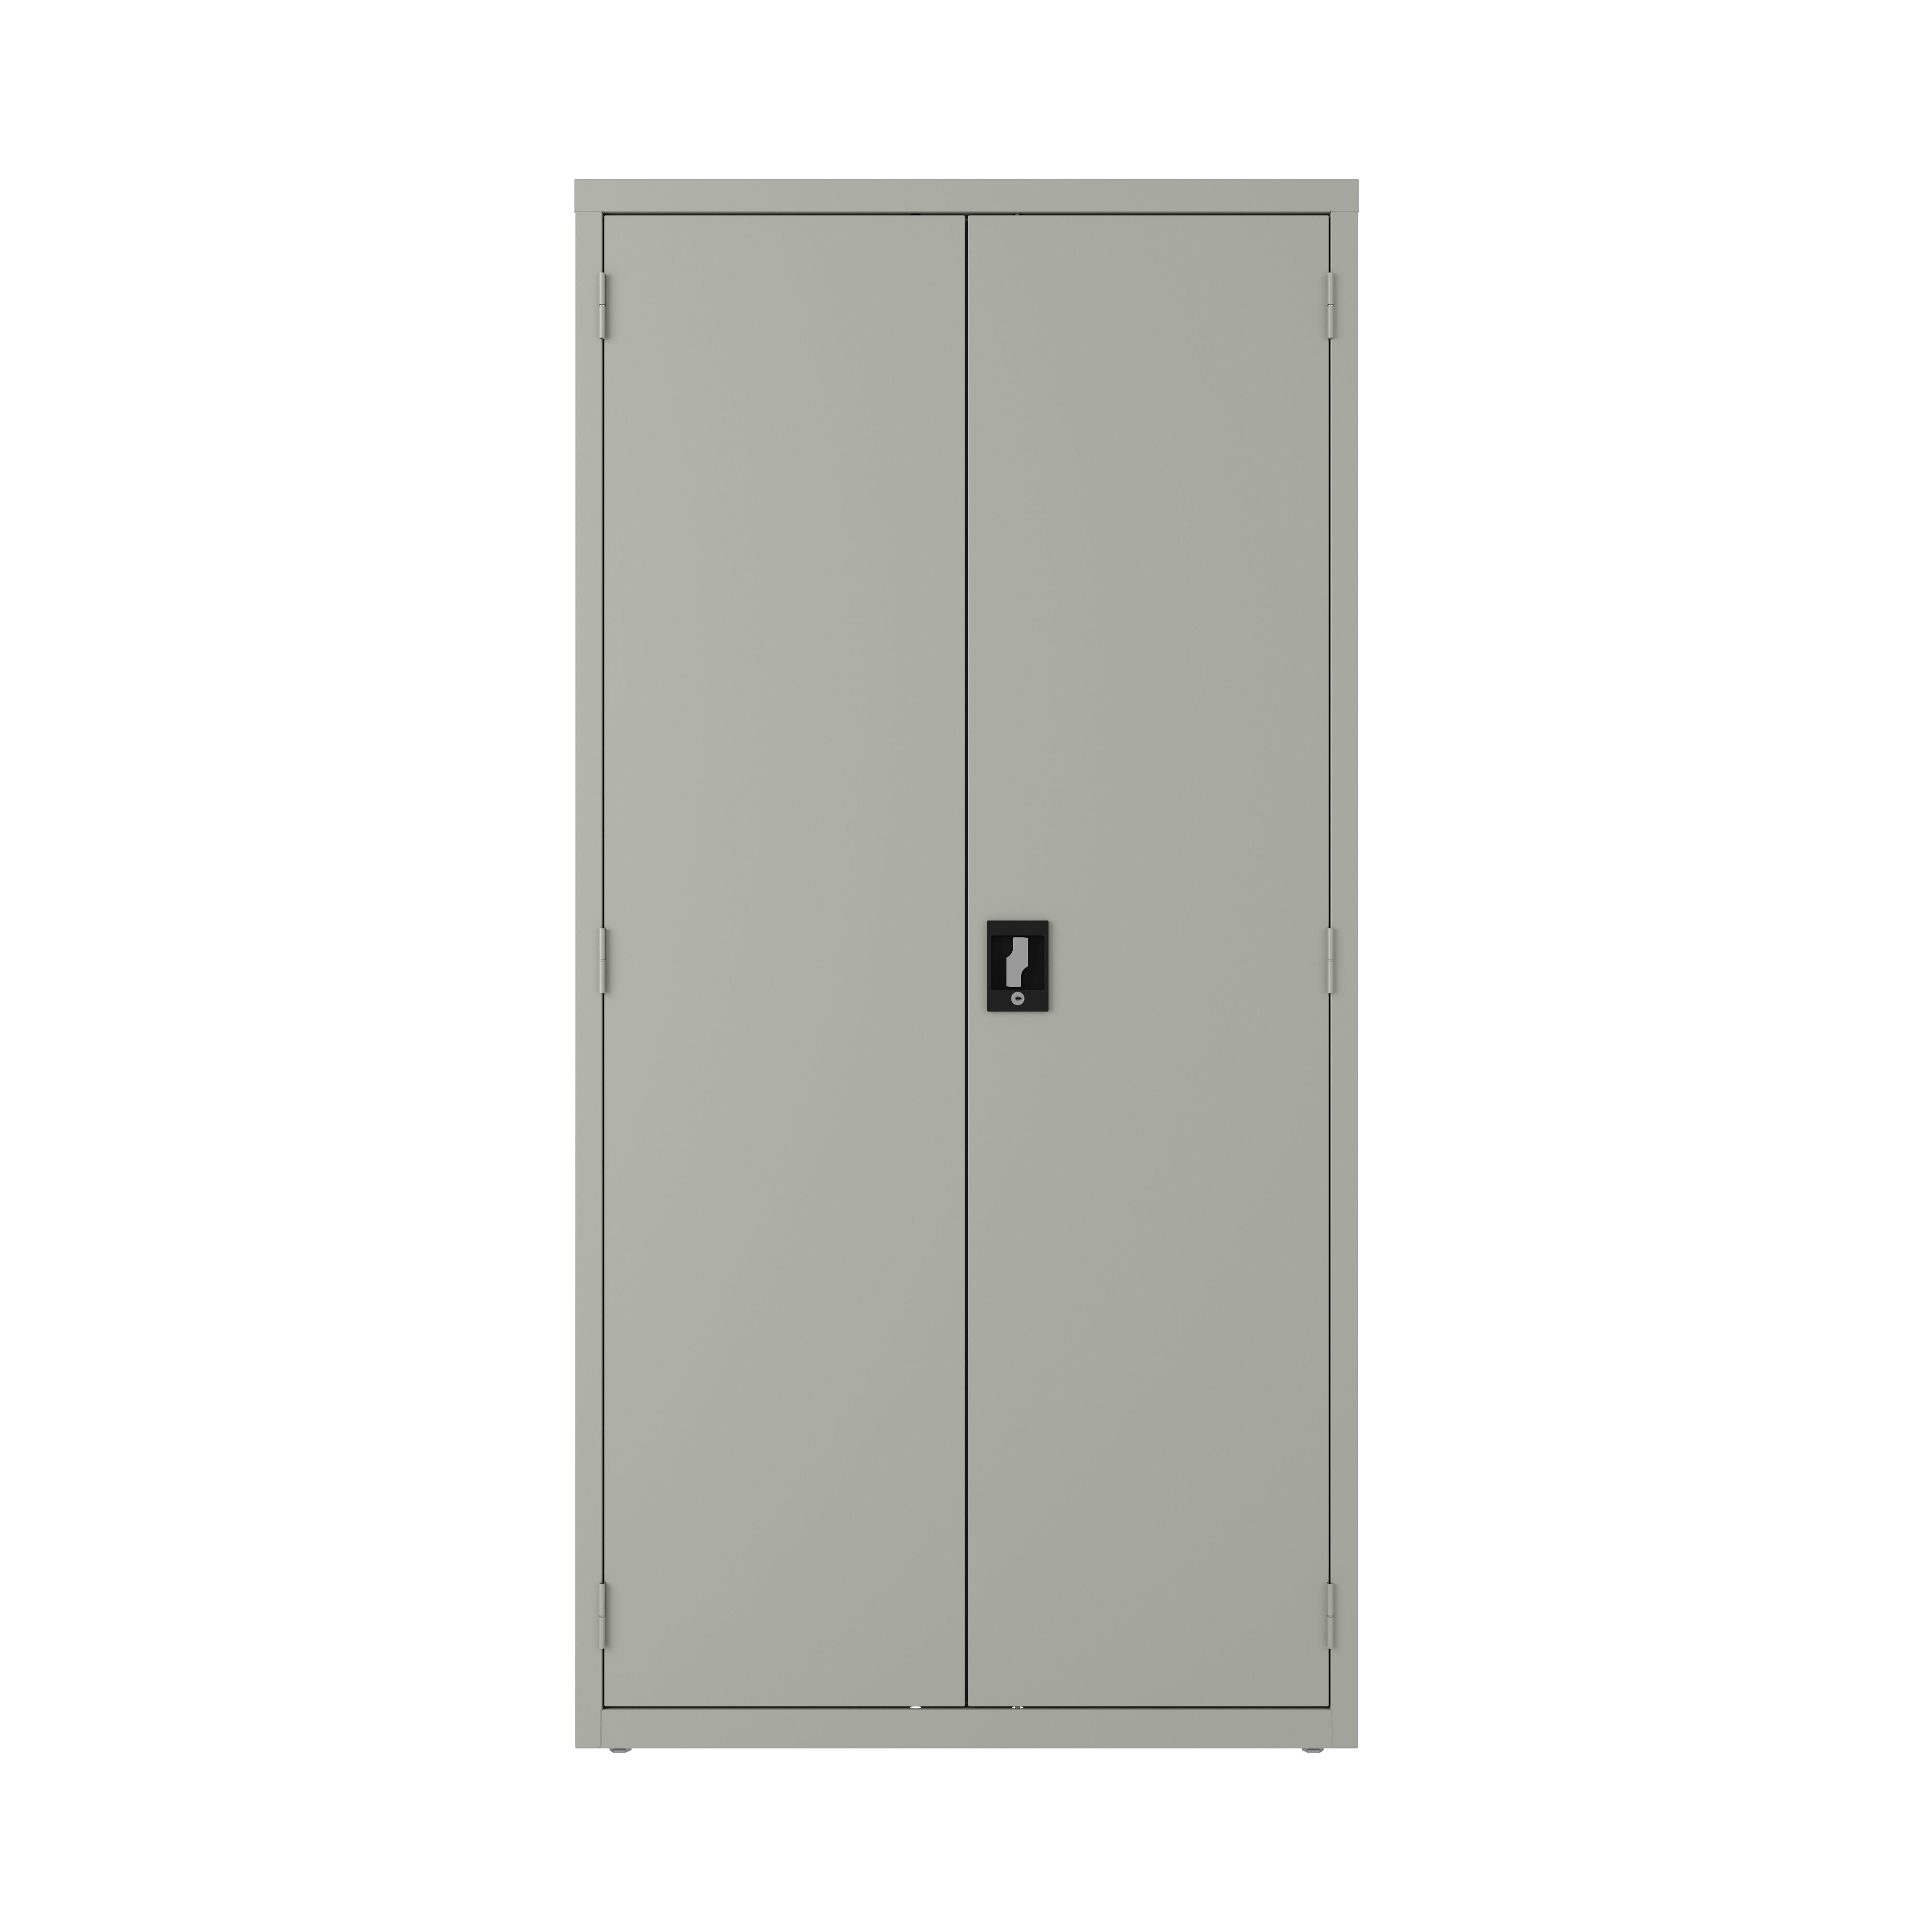 https://assets.wfcdn.com/im/70291844/compr-r85/7187/71874555/steel-single-storage-cabinet-72-h-x-36-w-x-18-d.jpg